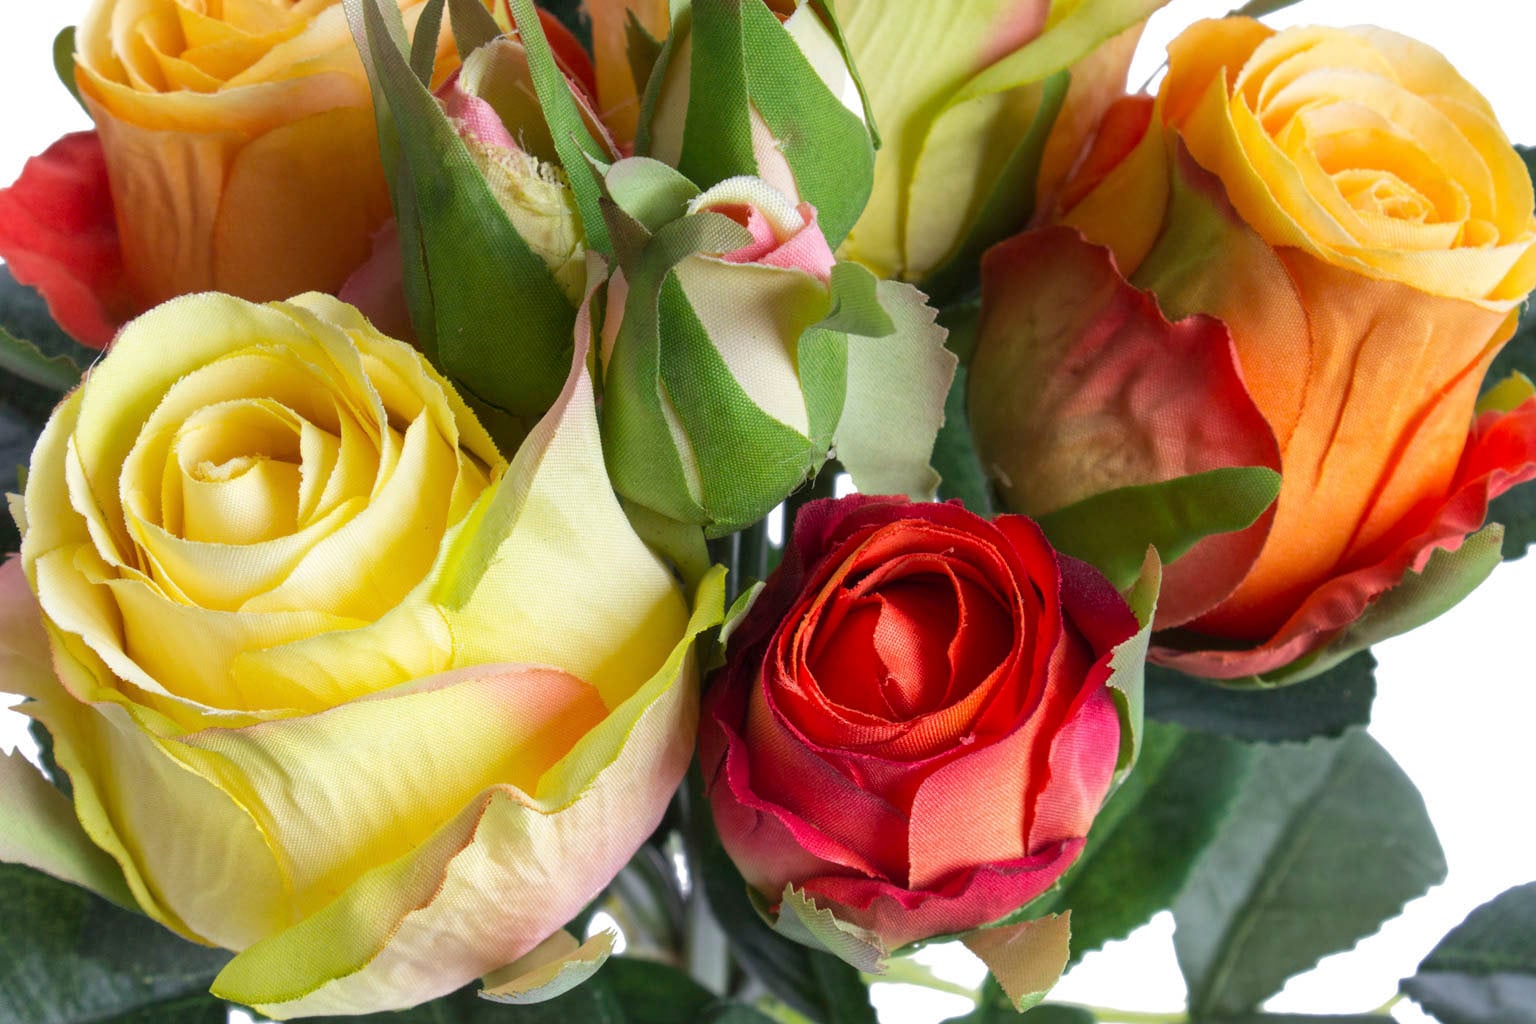 Botanic-Haus Kunstblume »Rosenstrauß mit 5 Rosen und 3 Knospen« auf  Rechnung kaufen